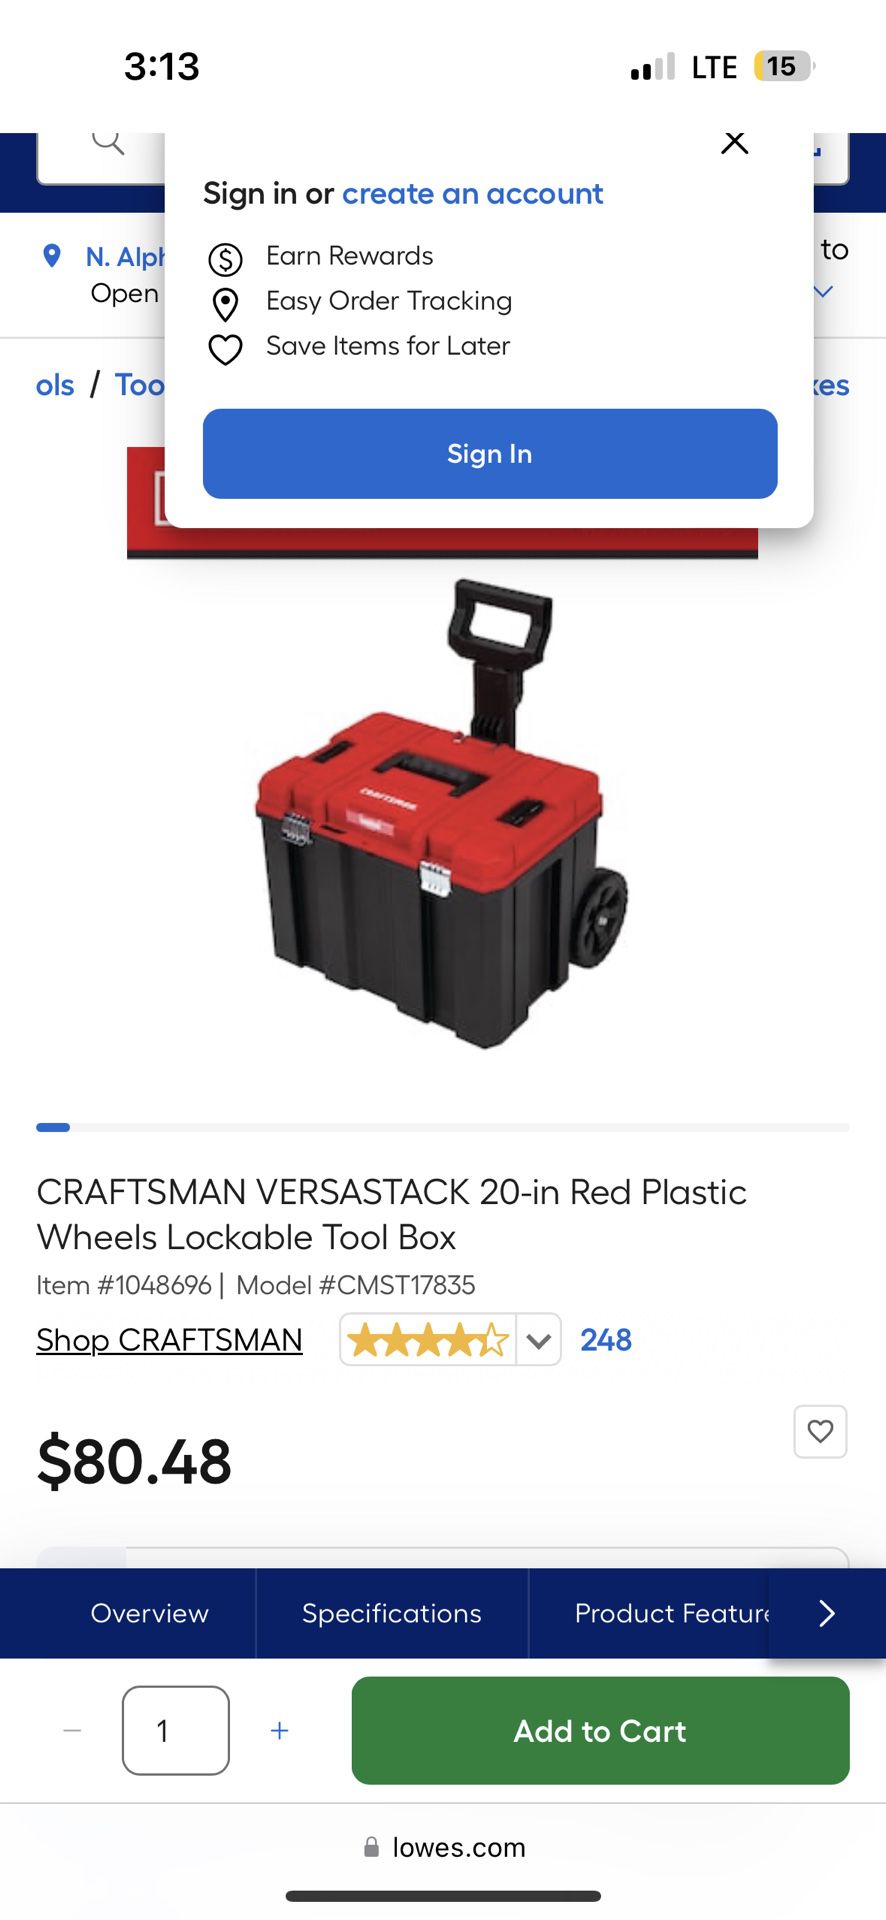 CRAFTSMAN VERSASTACK 20-in Red Plastic Wheels Lockable Tool Box